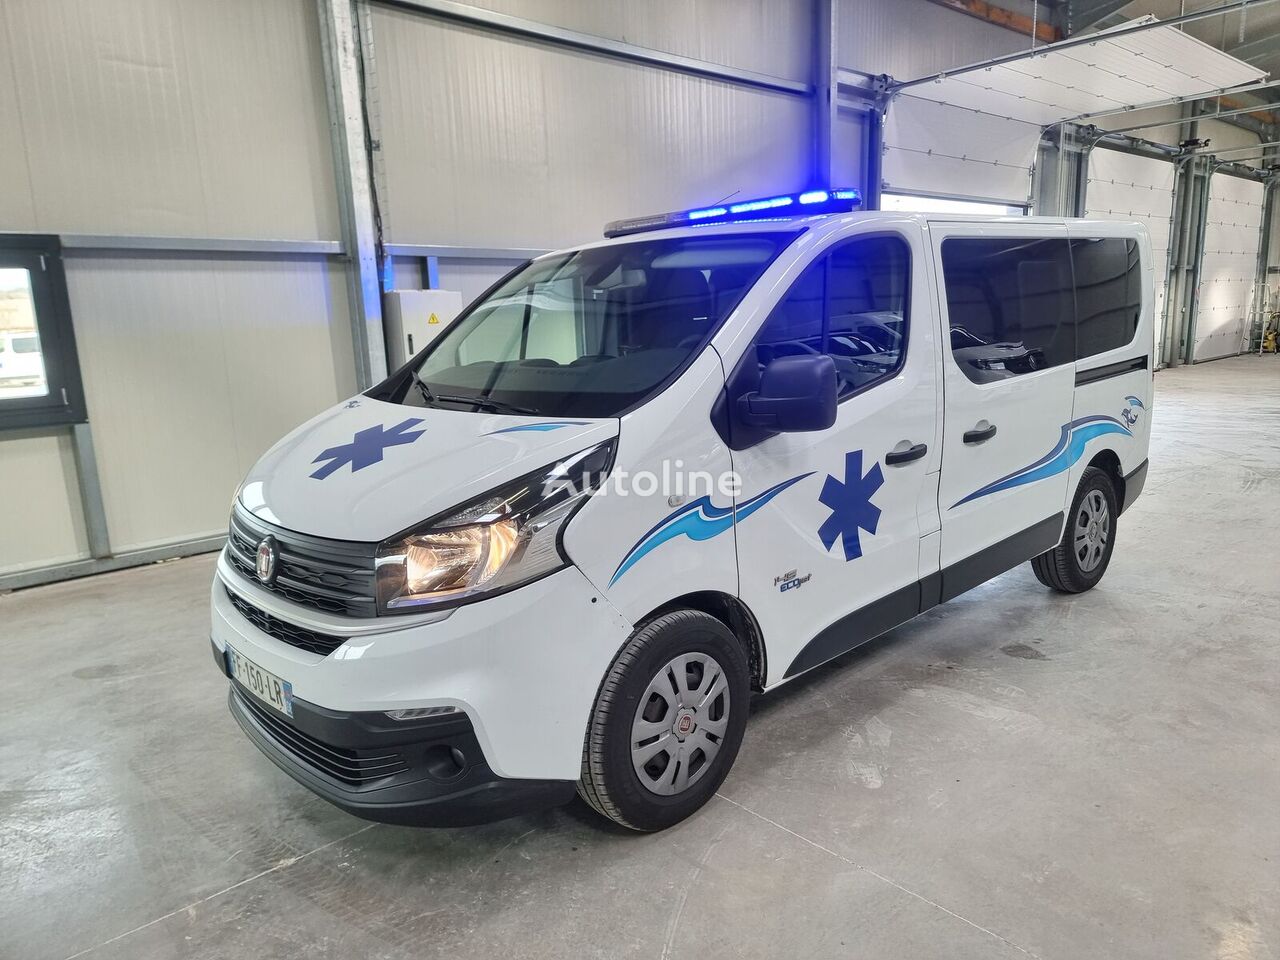 FIAT TALENTO 2019 168 419 KM ambulance